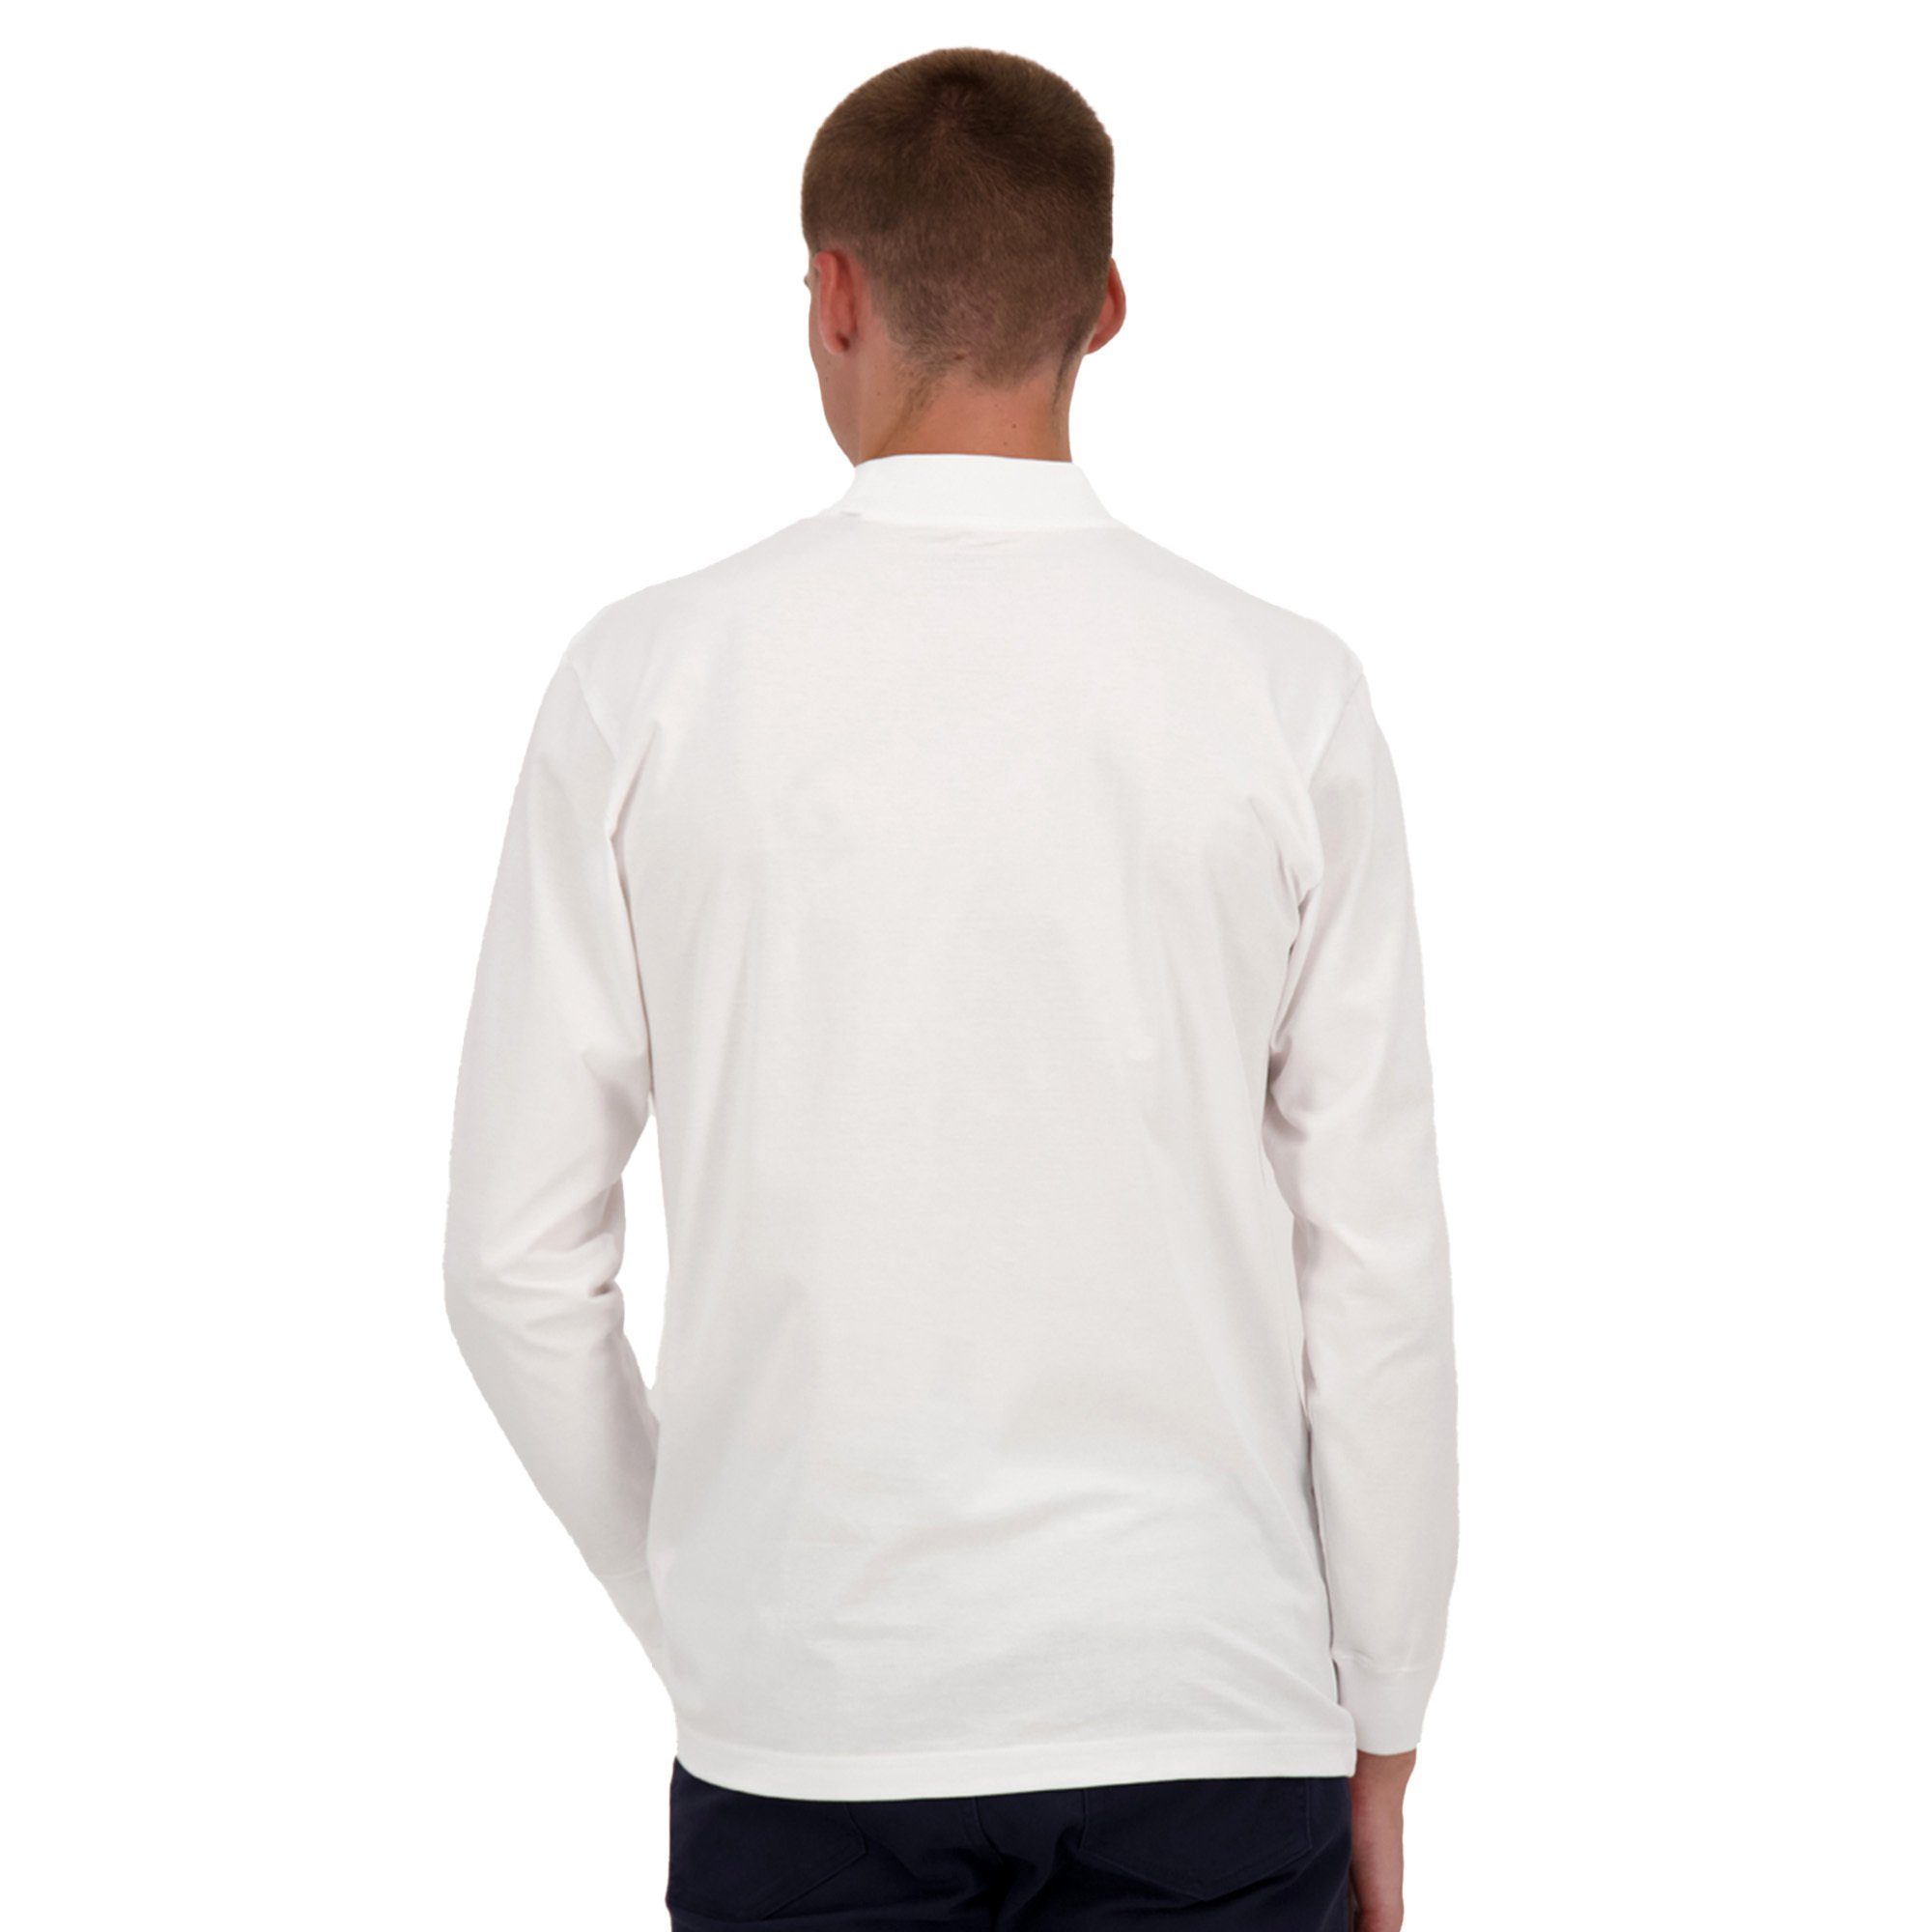 RAGMAN Sweatshirt Herren Stehkragen-Pullover Basic Langarm - Weiß